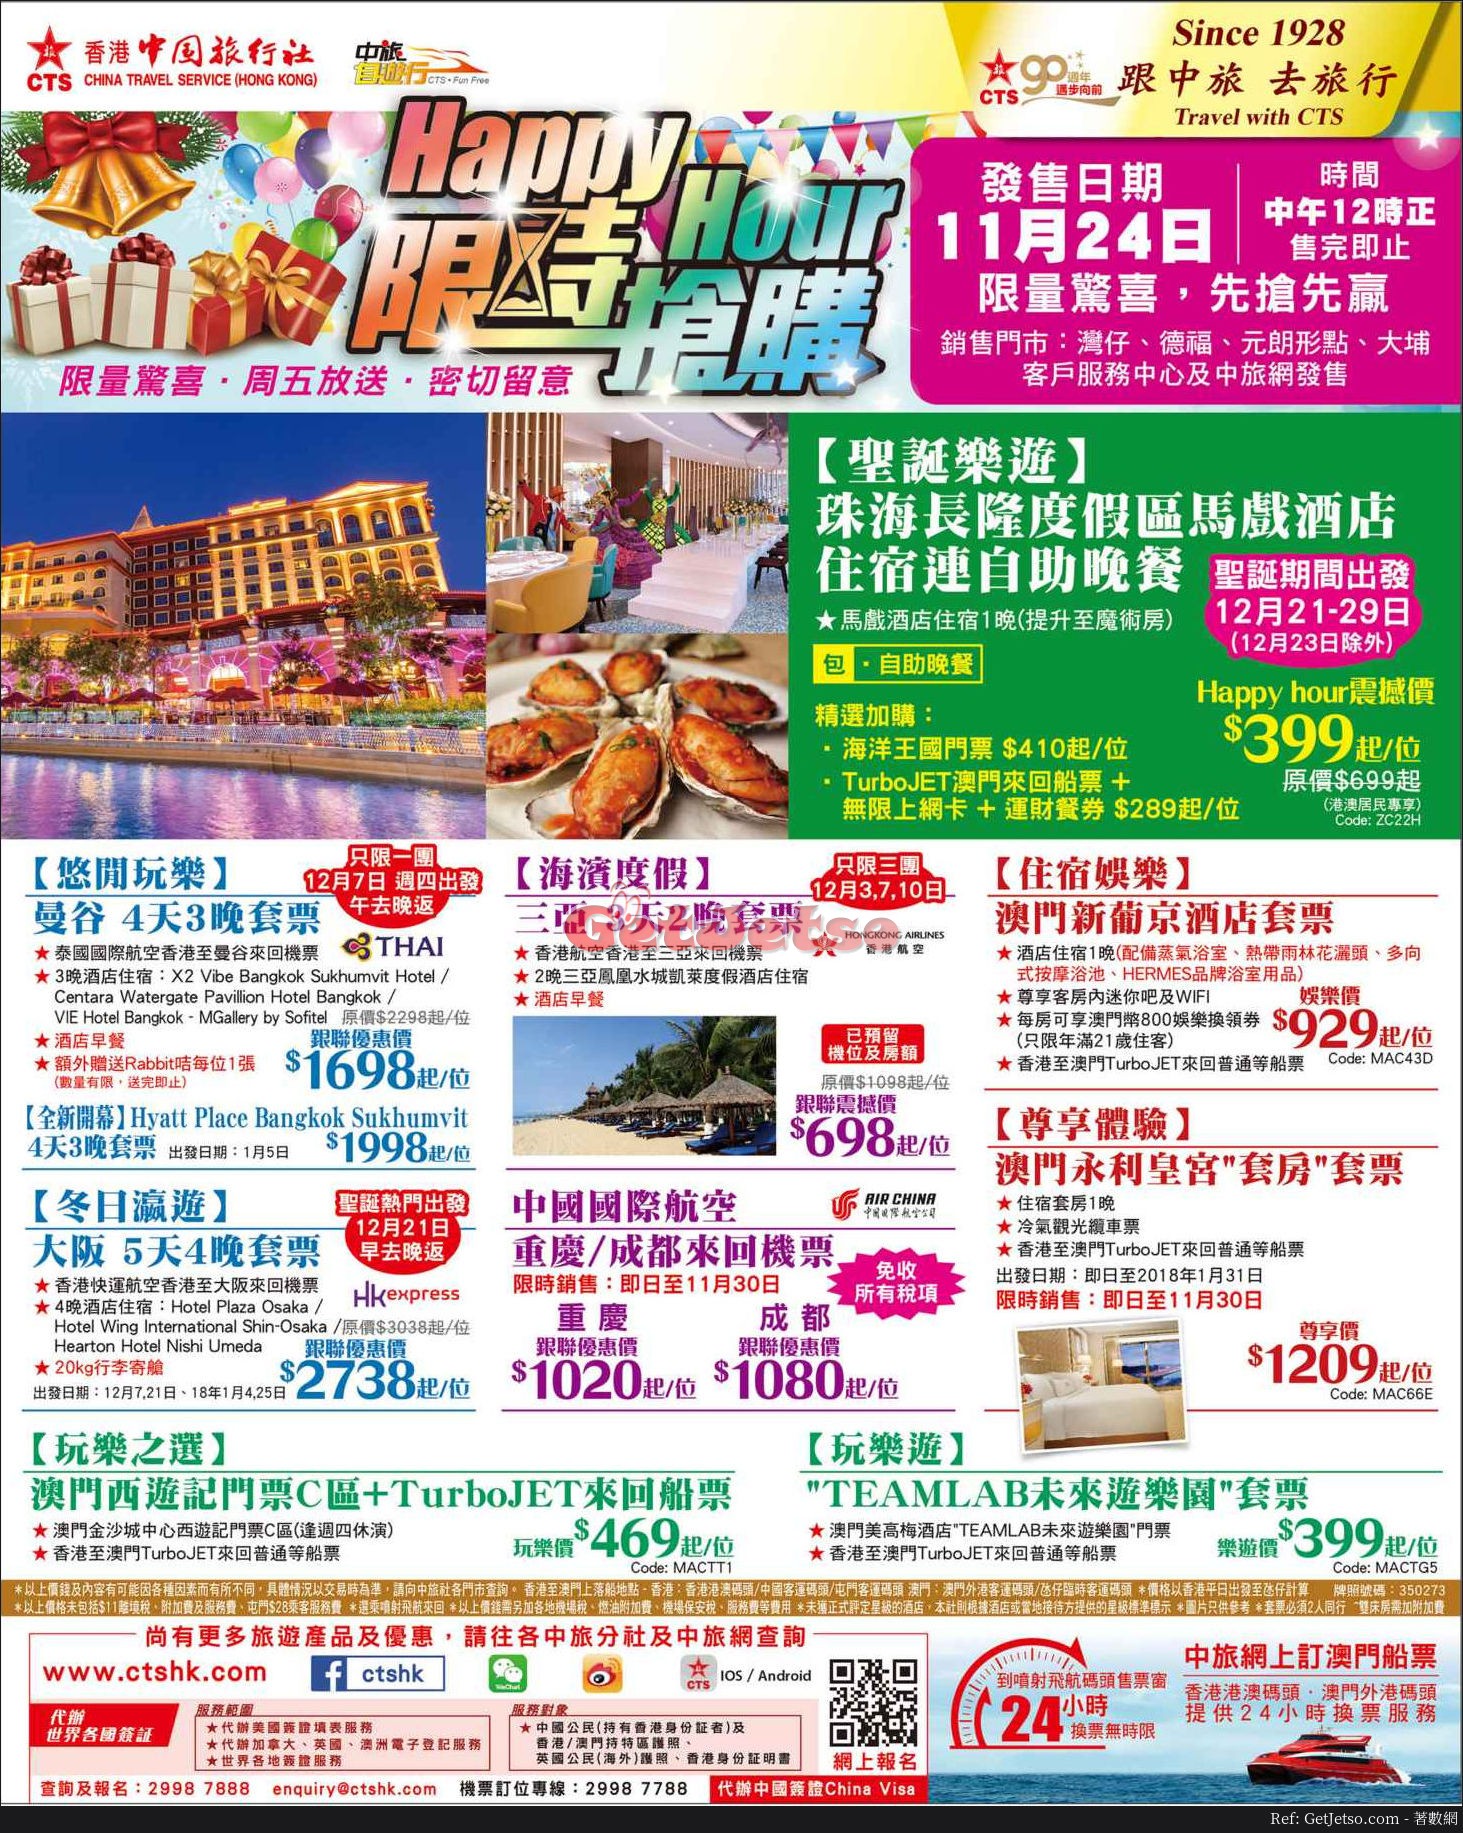 香港中國旅行社快閃遊套票優惠(17年11月24日)圖片1